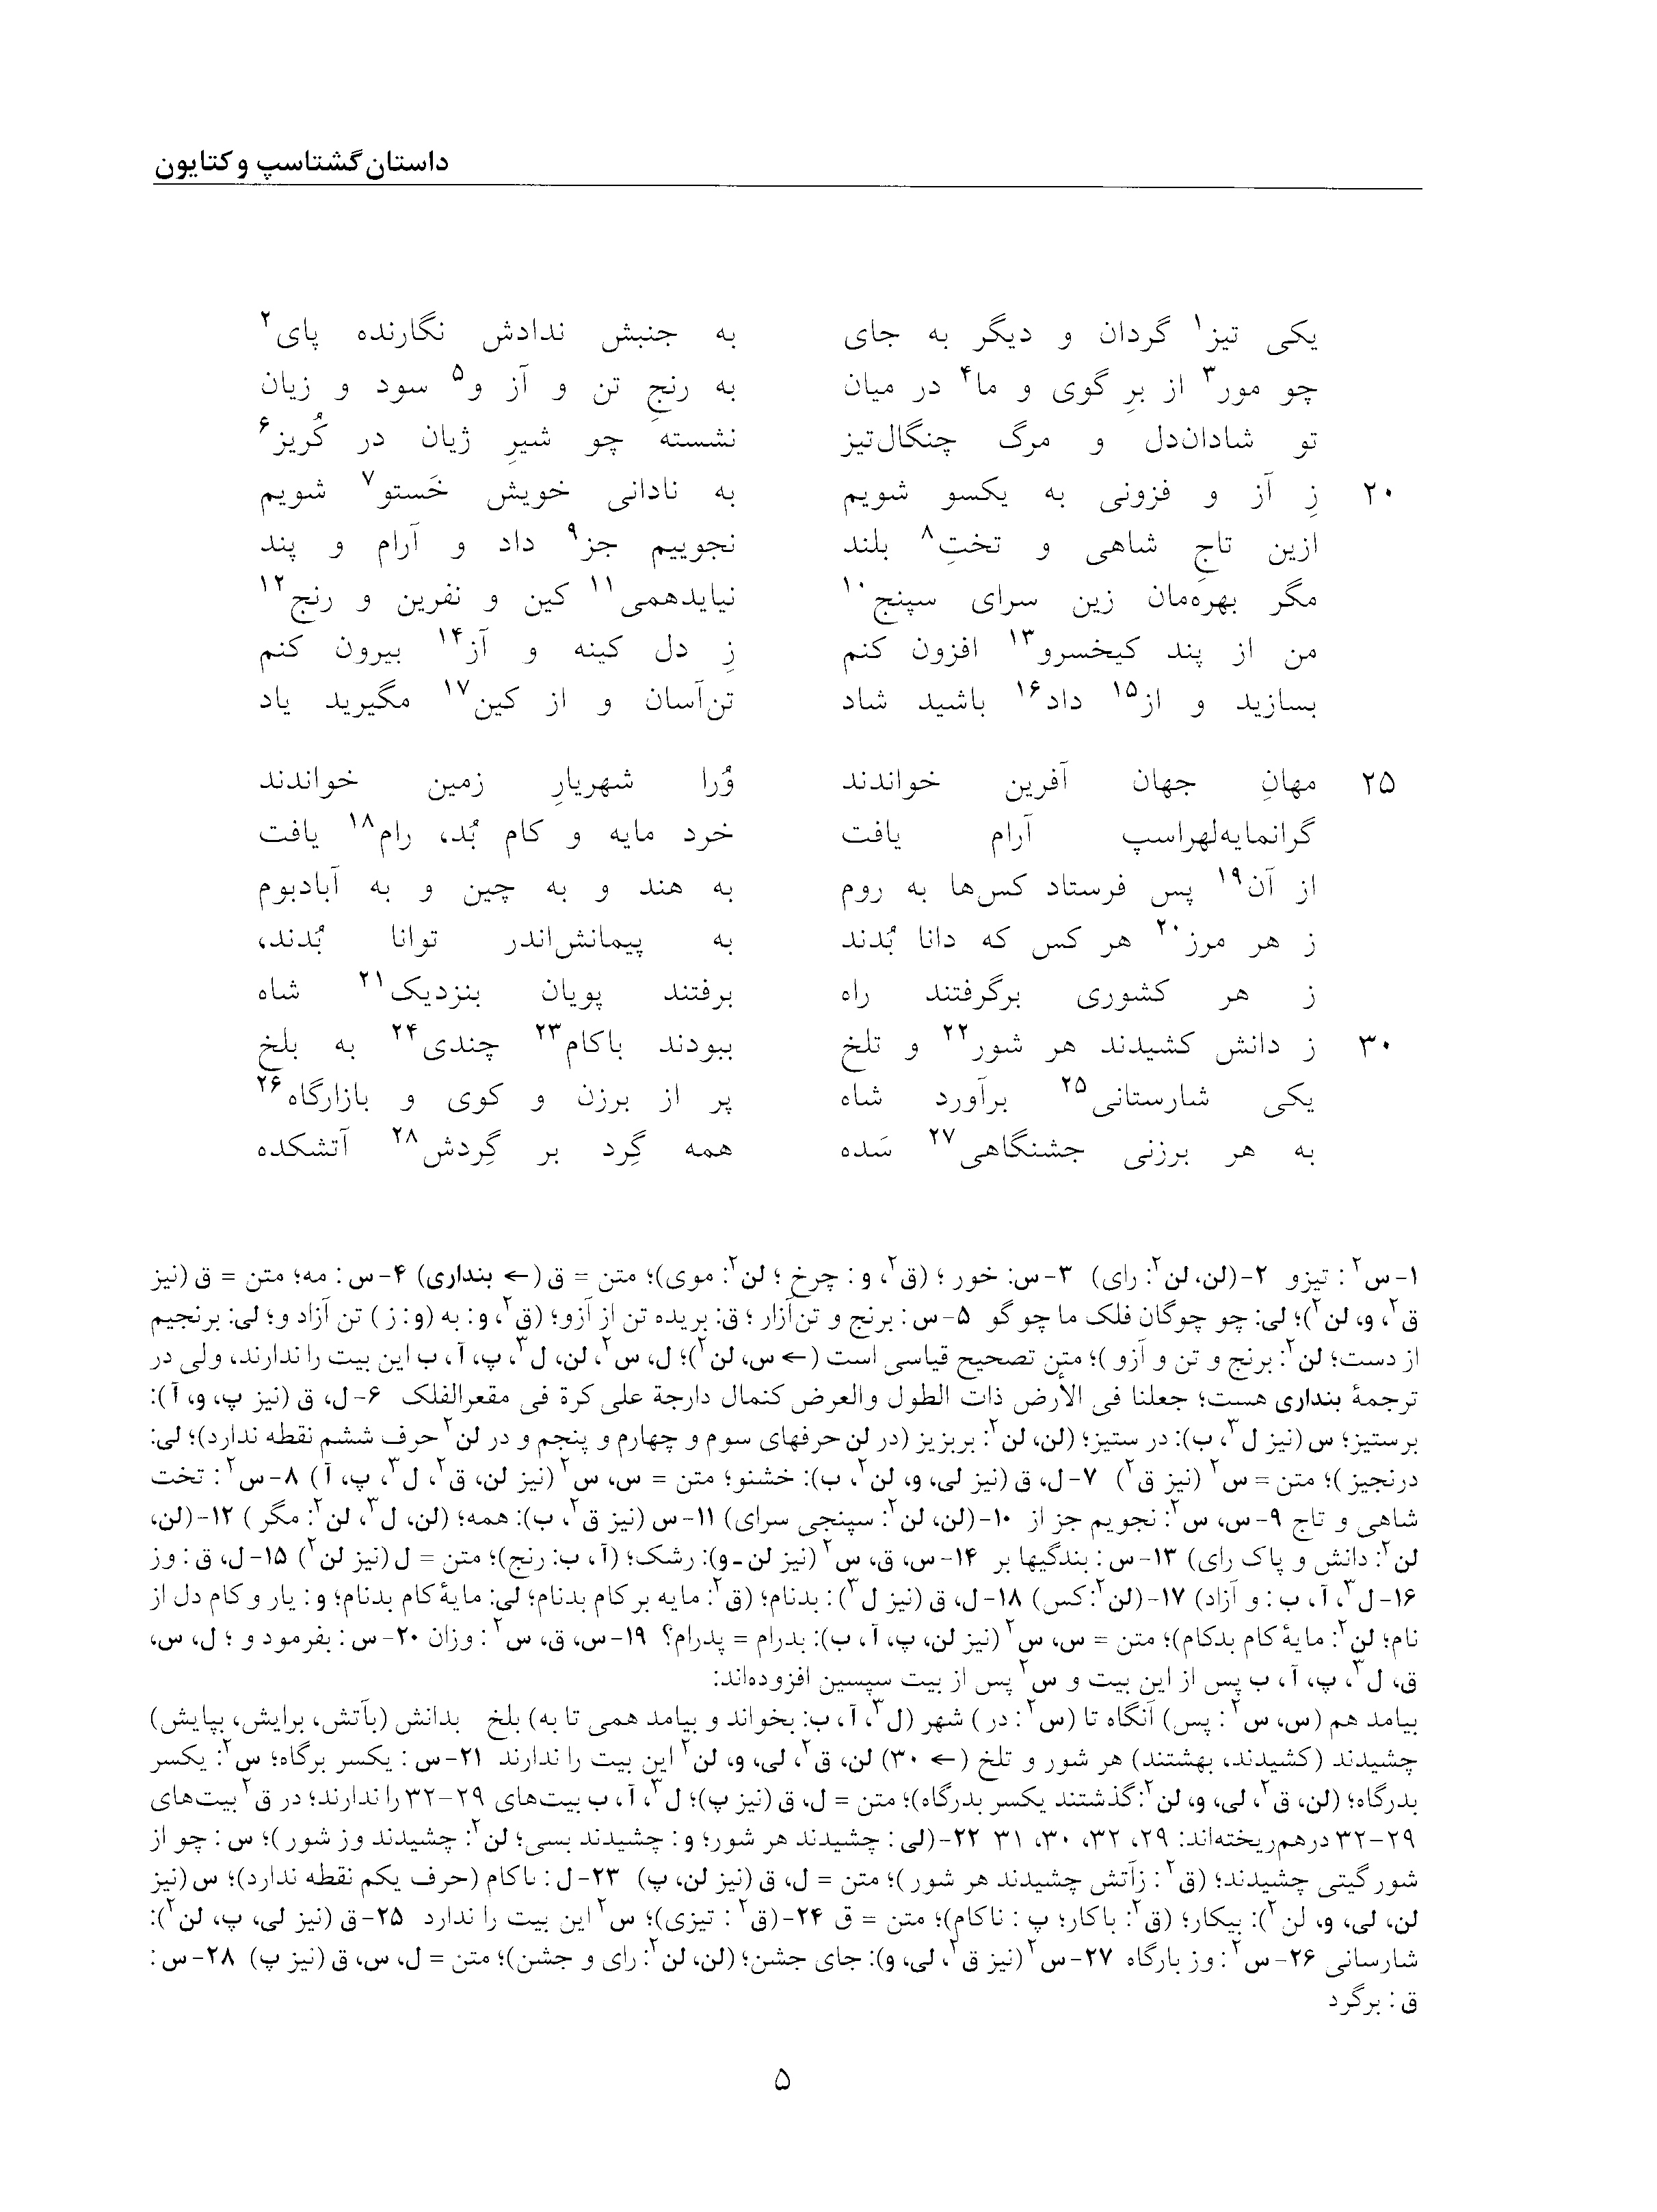 vol. 5, p. 5